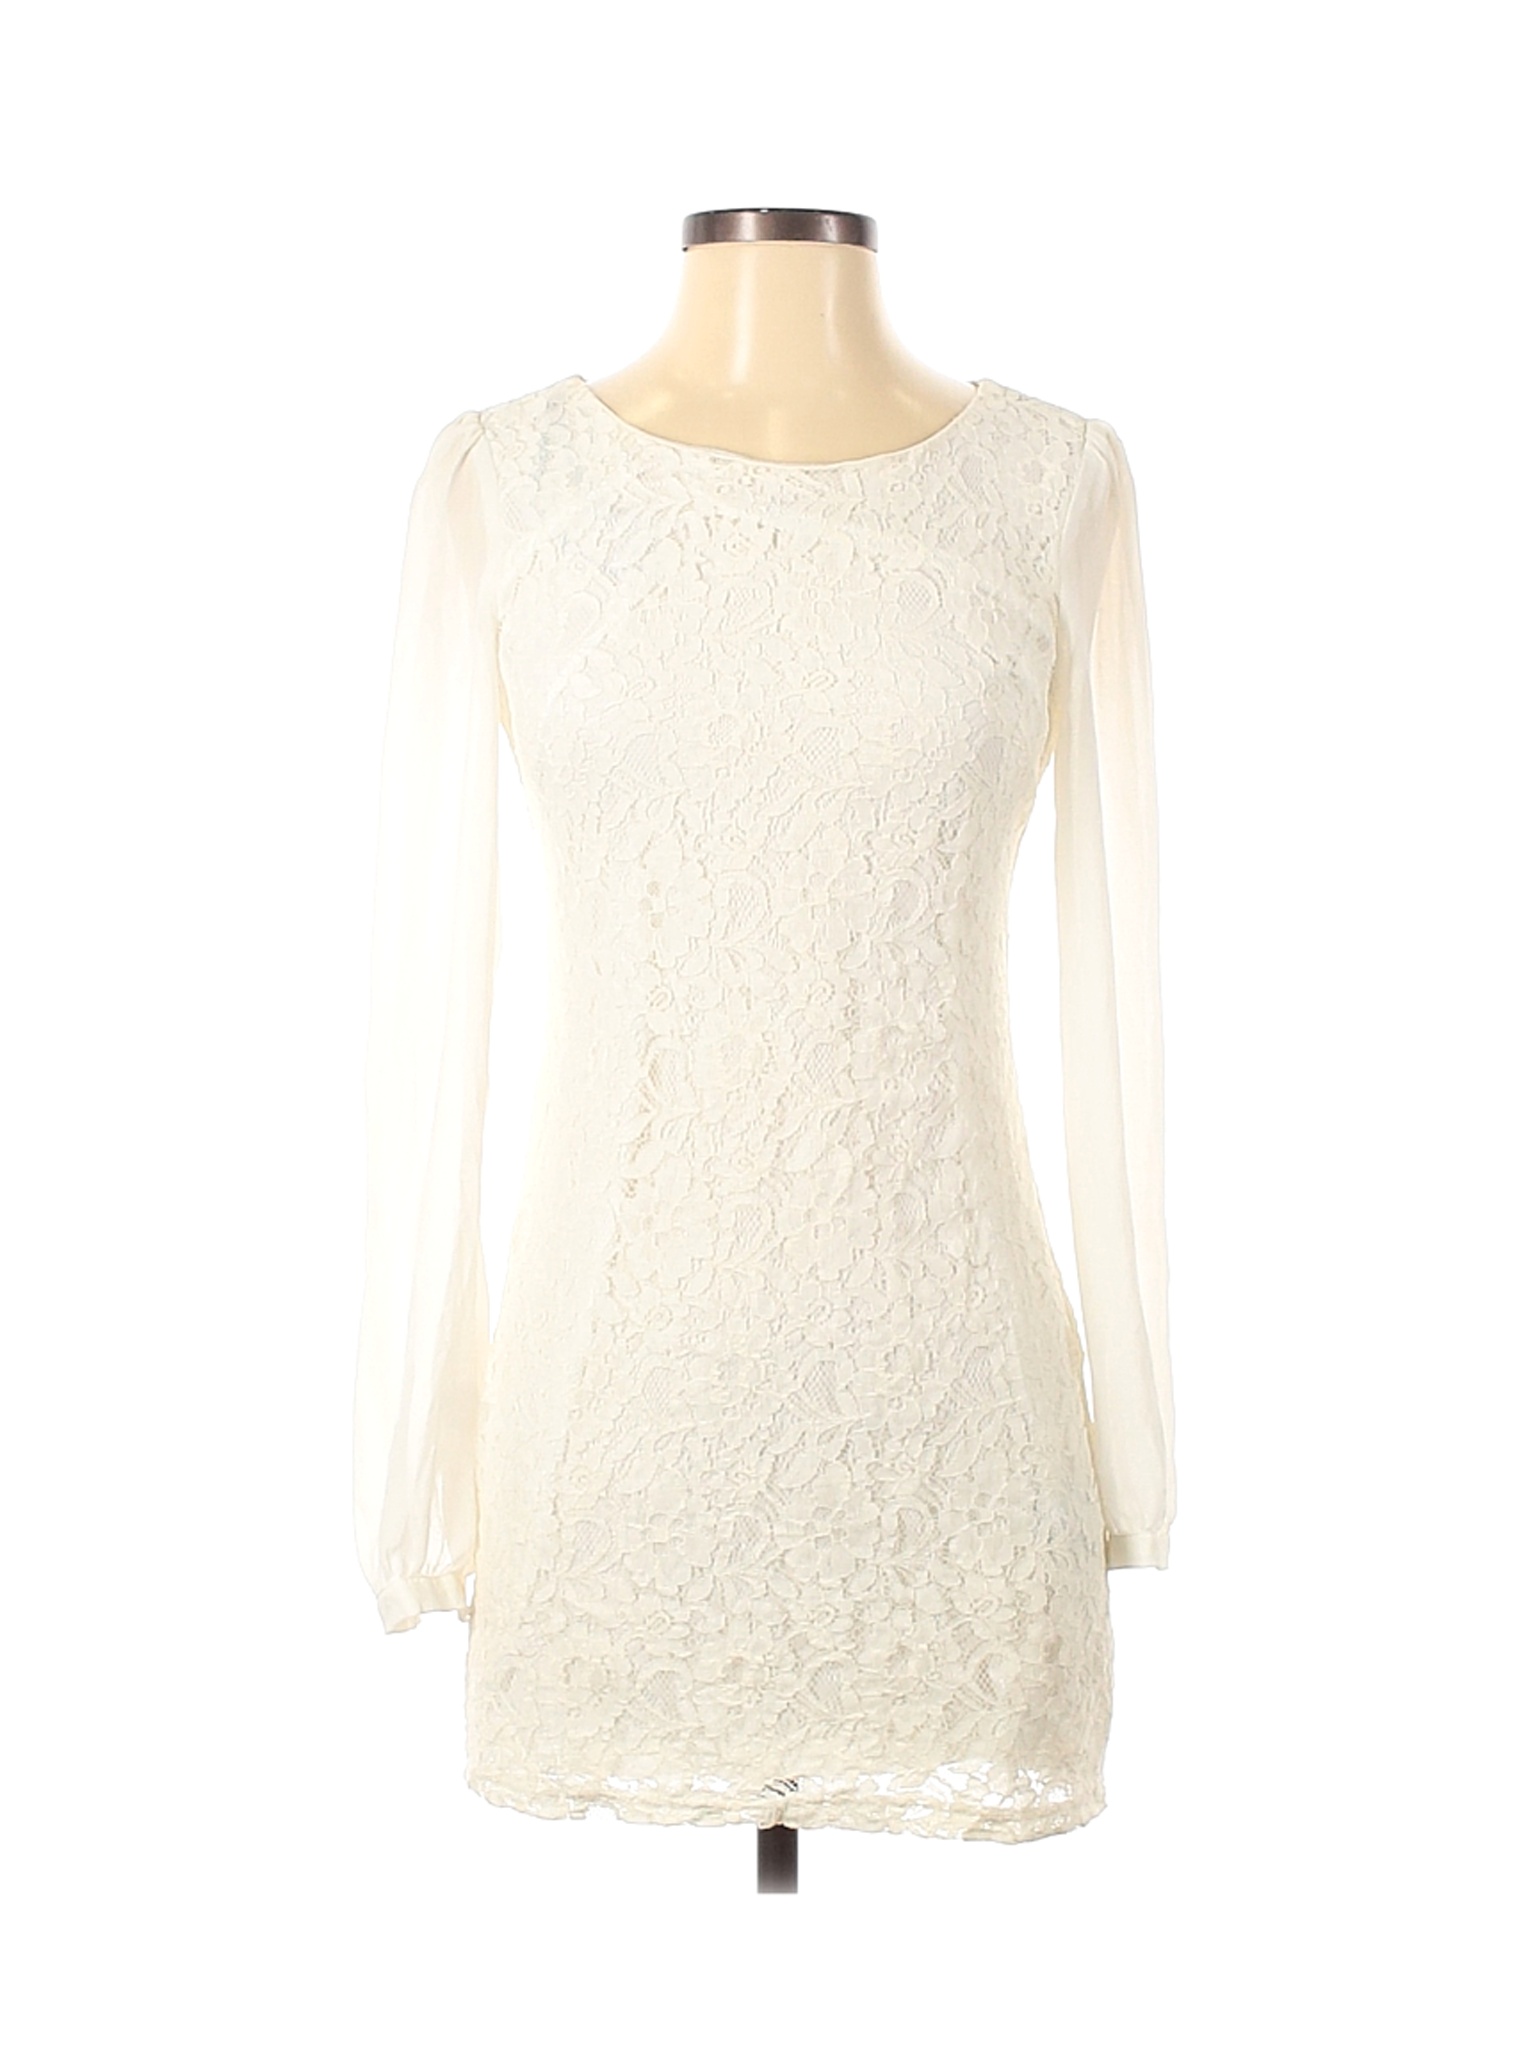 Forever 21 Women Ivory Casual Dress S | eBay